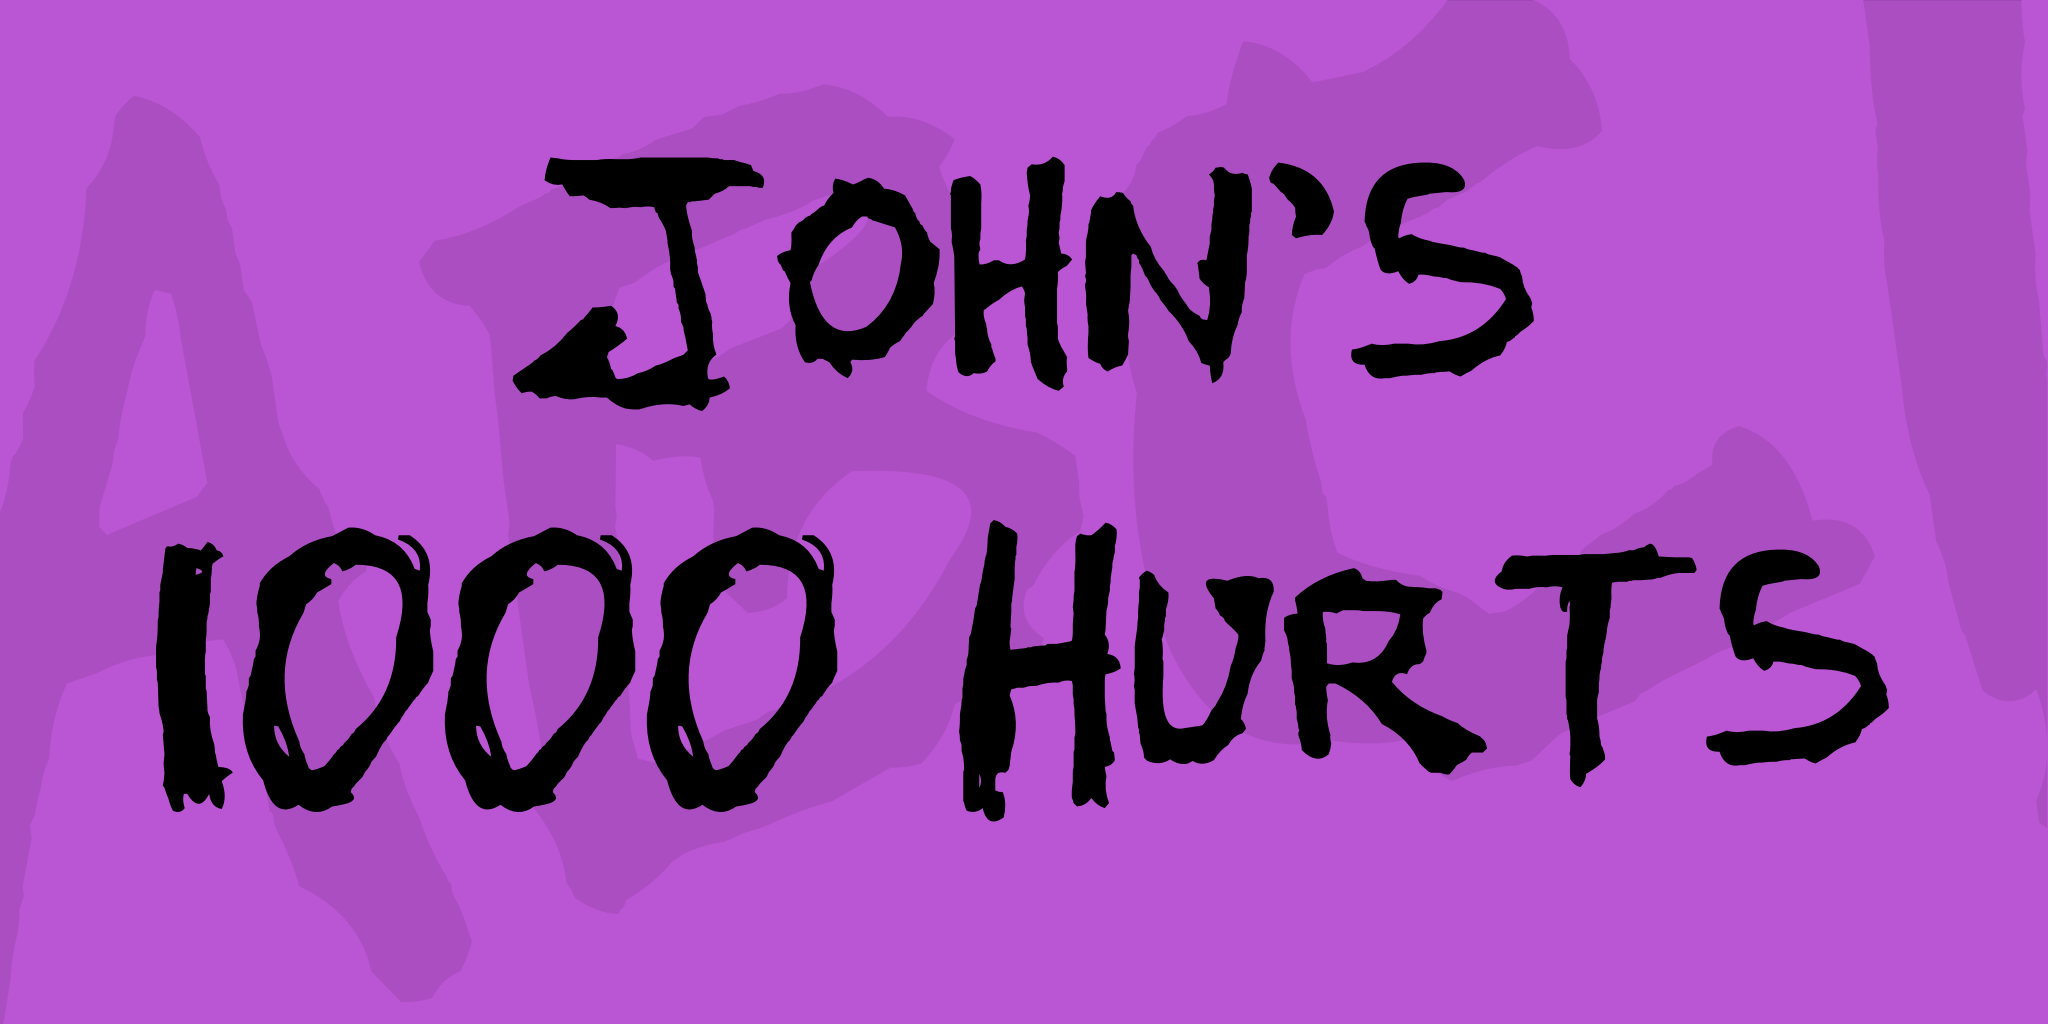 John's 1000 Hurts